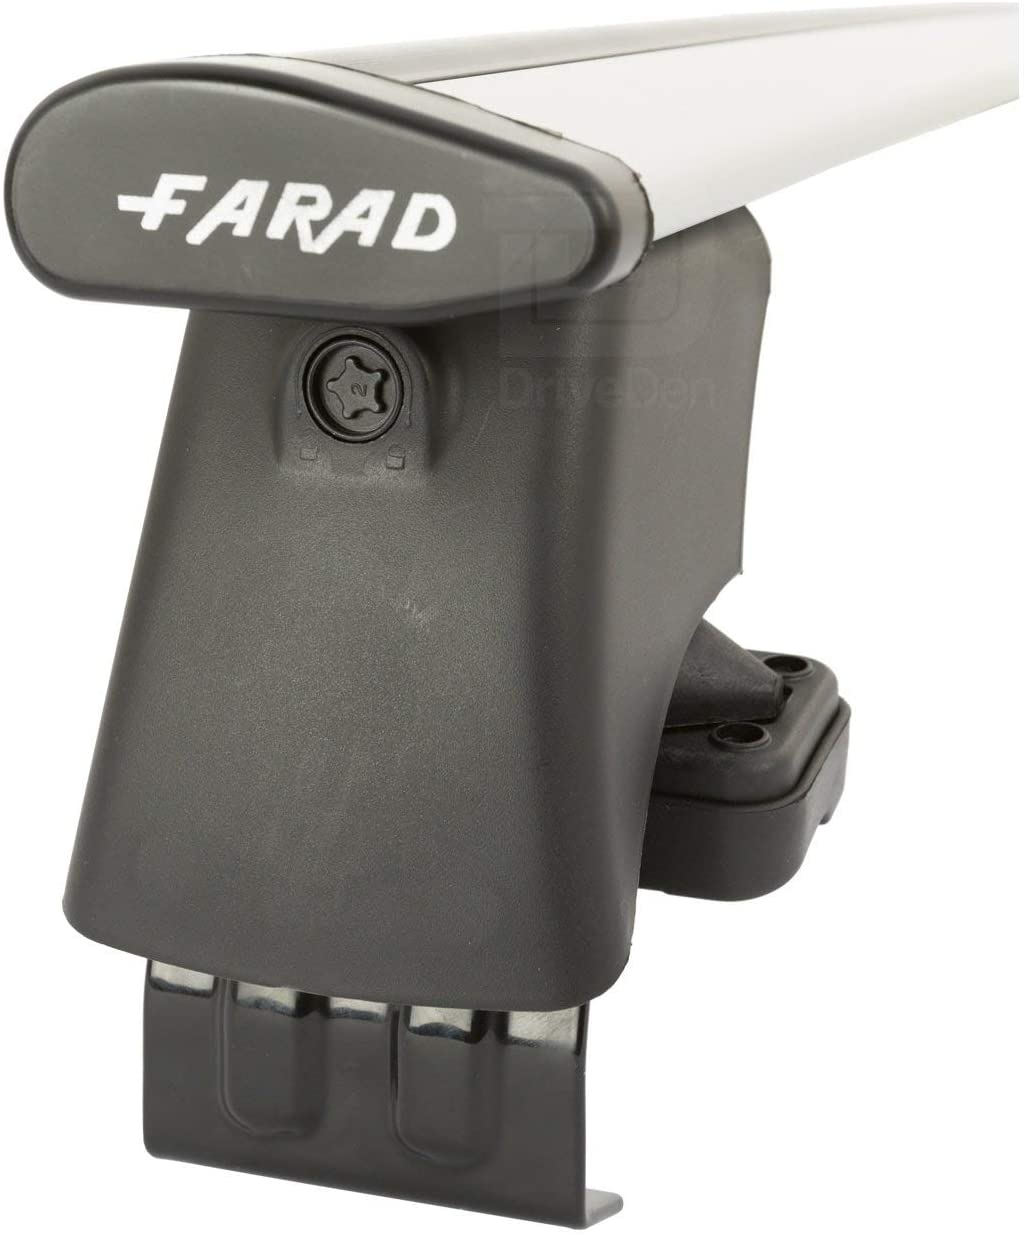 FARAD-Kit H2 per barre portatutto - Peugeot 208 2012-2019 (senza corrimano)